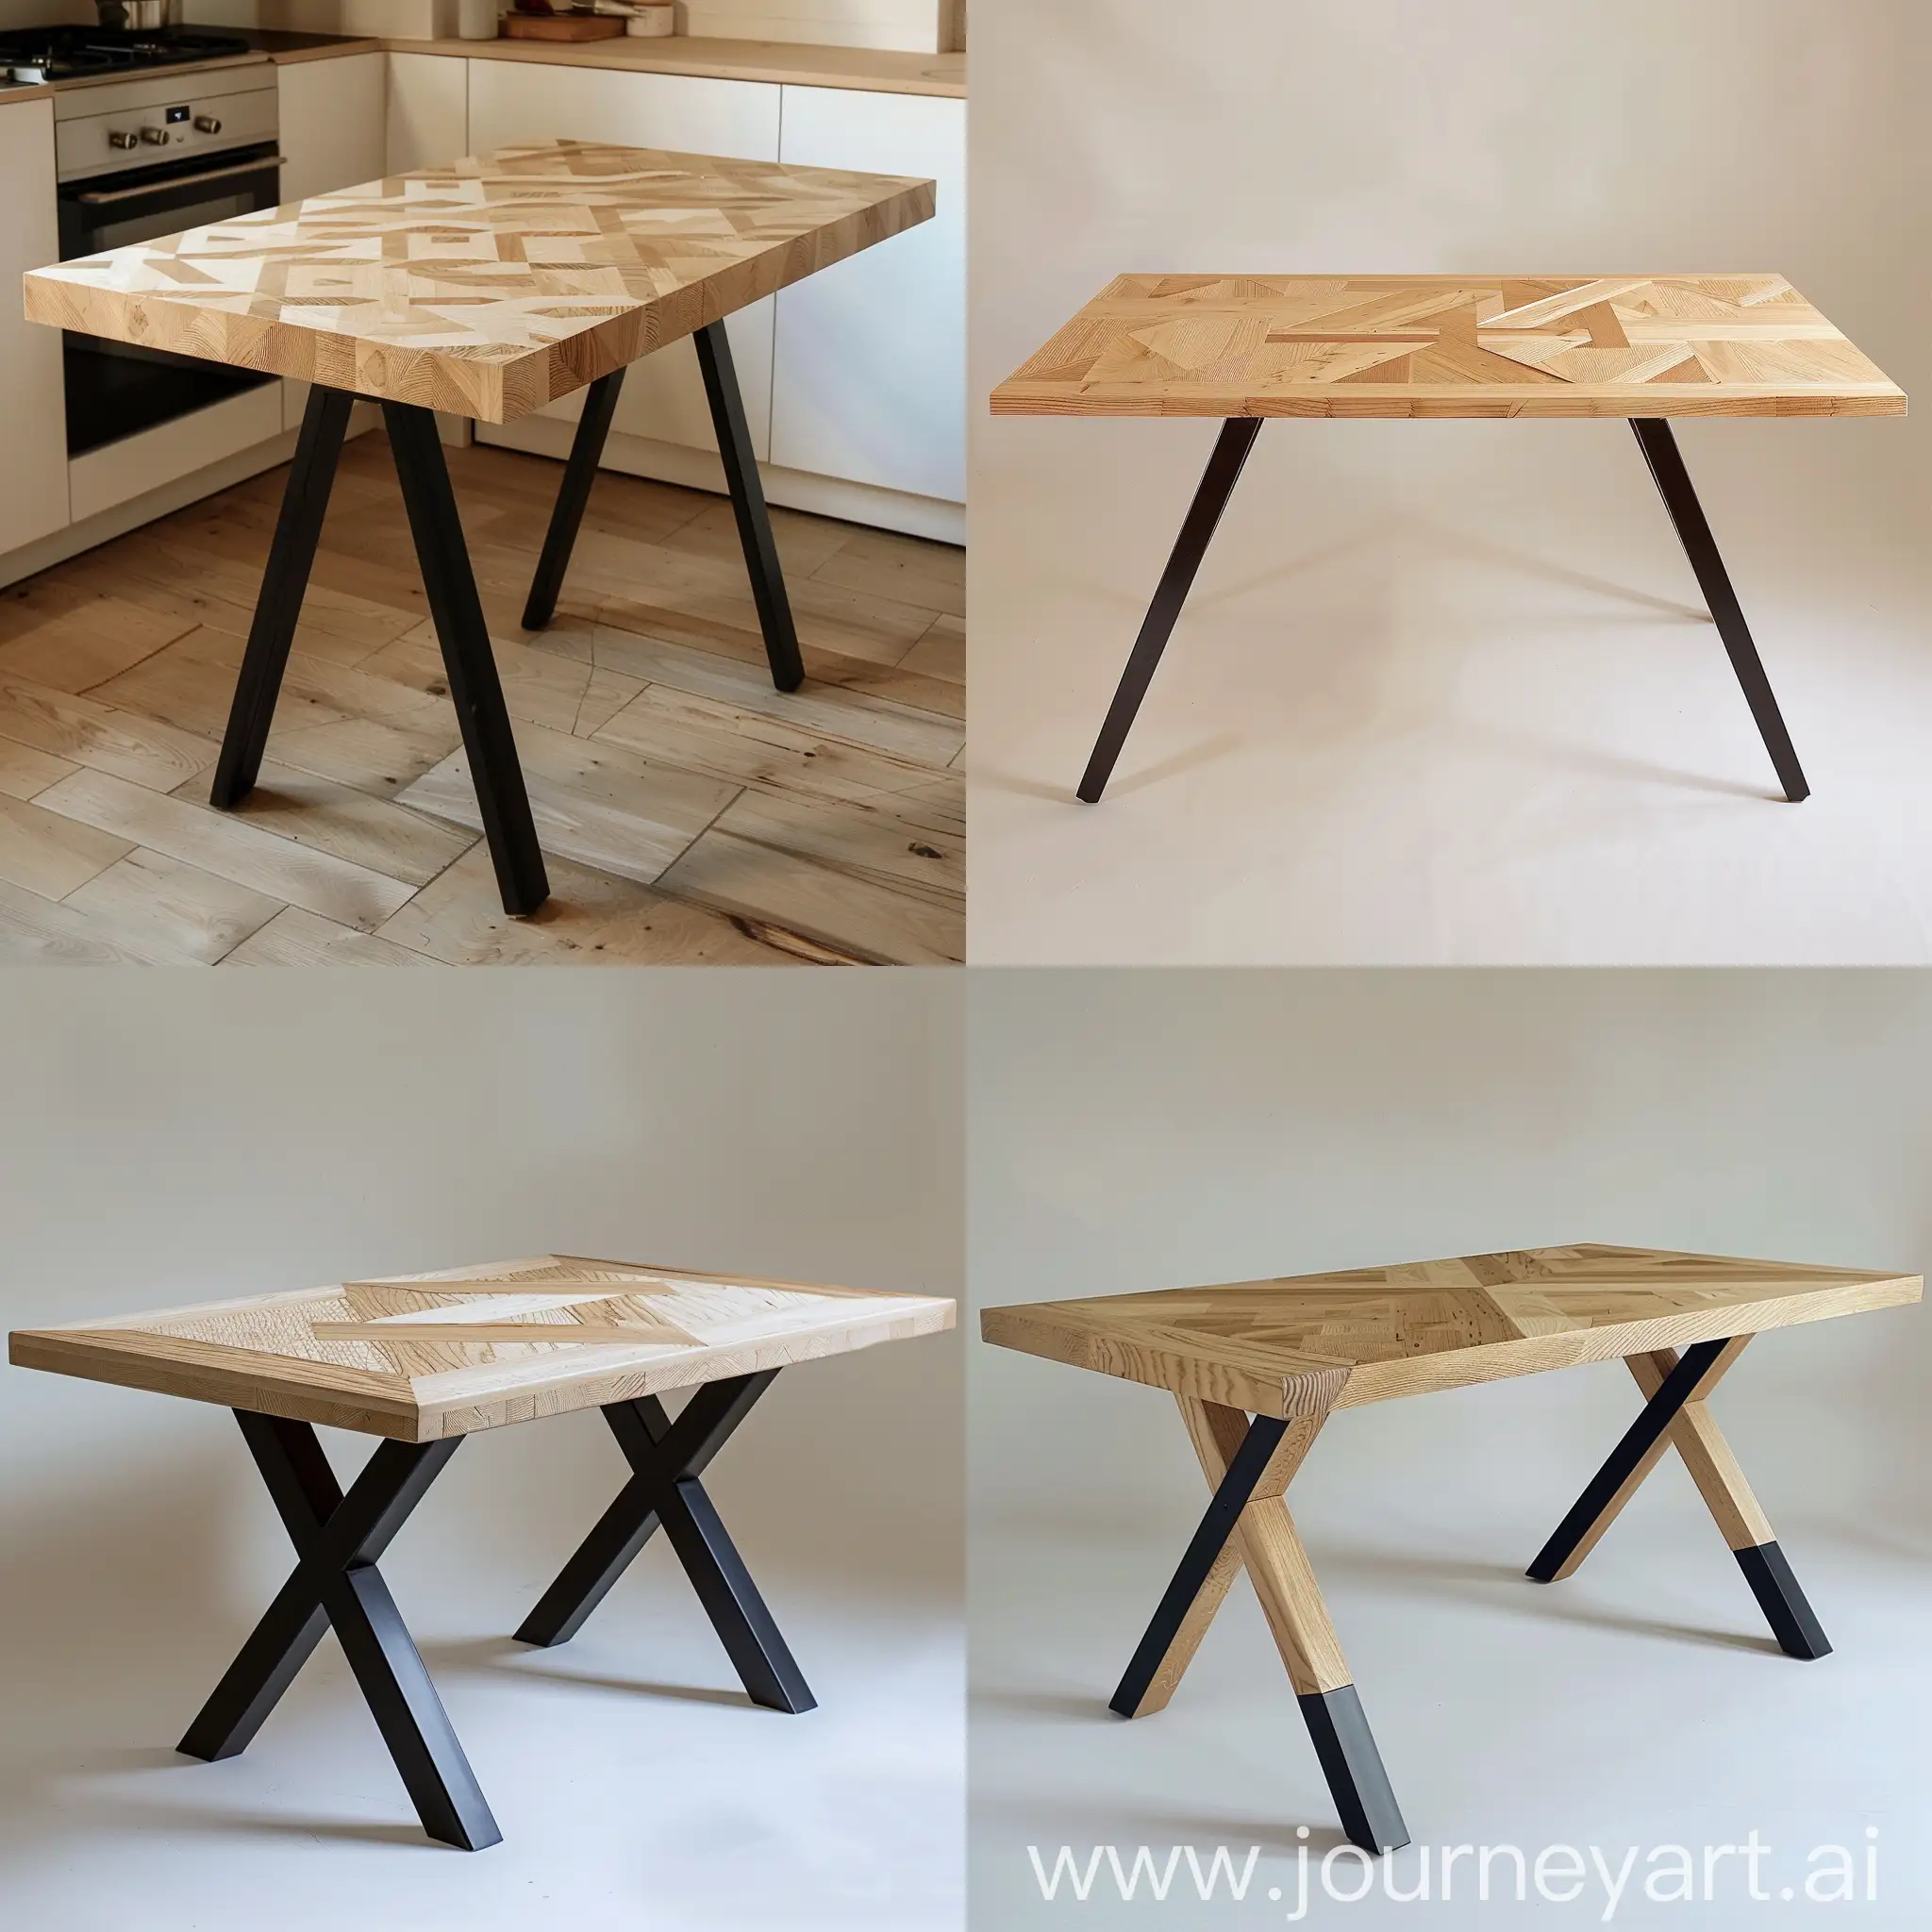 یک میز  چوبی با چوب روشن که طرح حروف zهست  با بک گراند شیری ، پایه های میز مشکی هست و  روی میز هیچ محصولی نیست